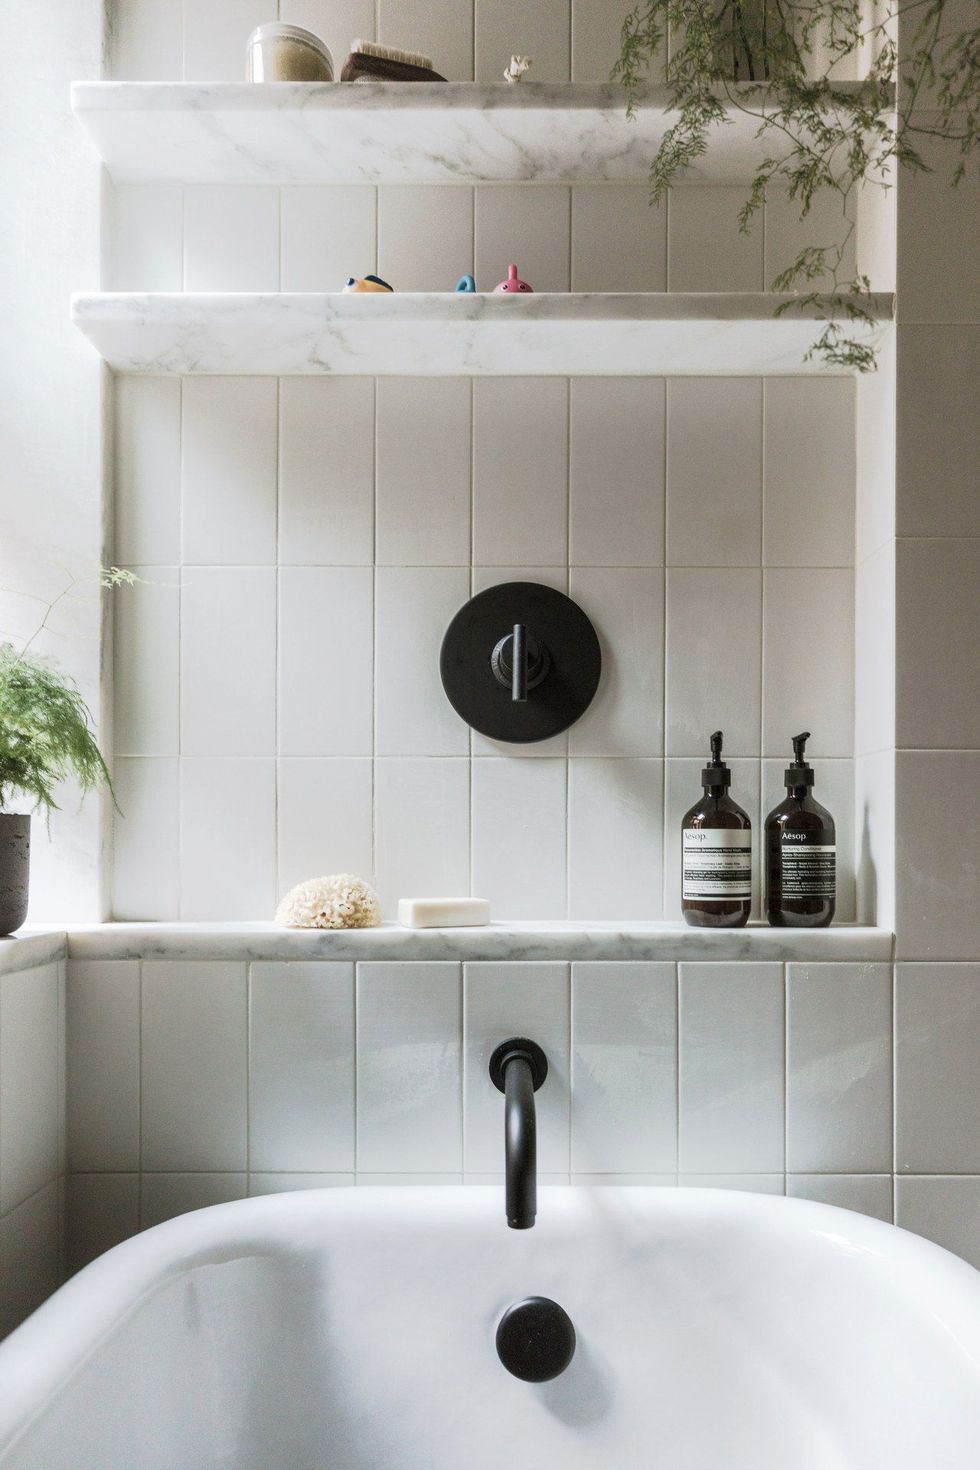 TOP 100 Bathroom Shelves Interior Design As Decoration and Storage